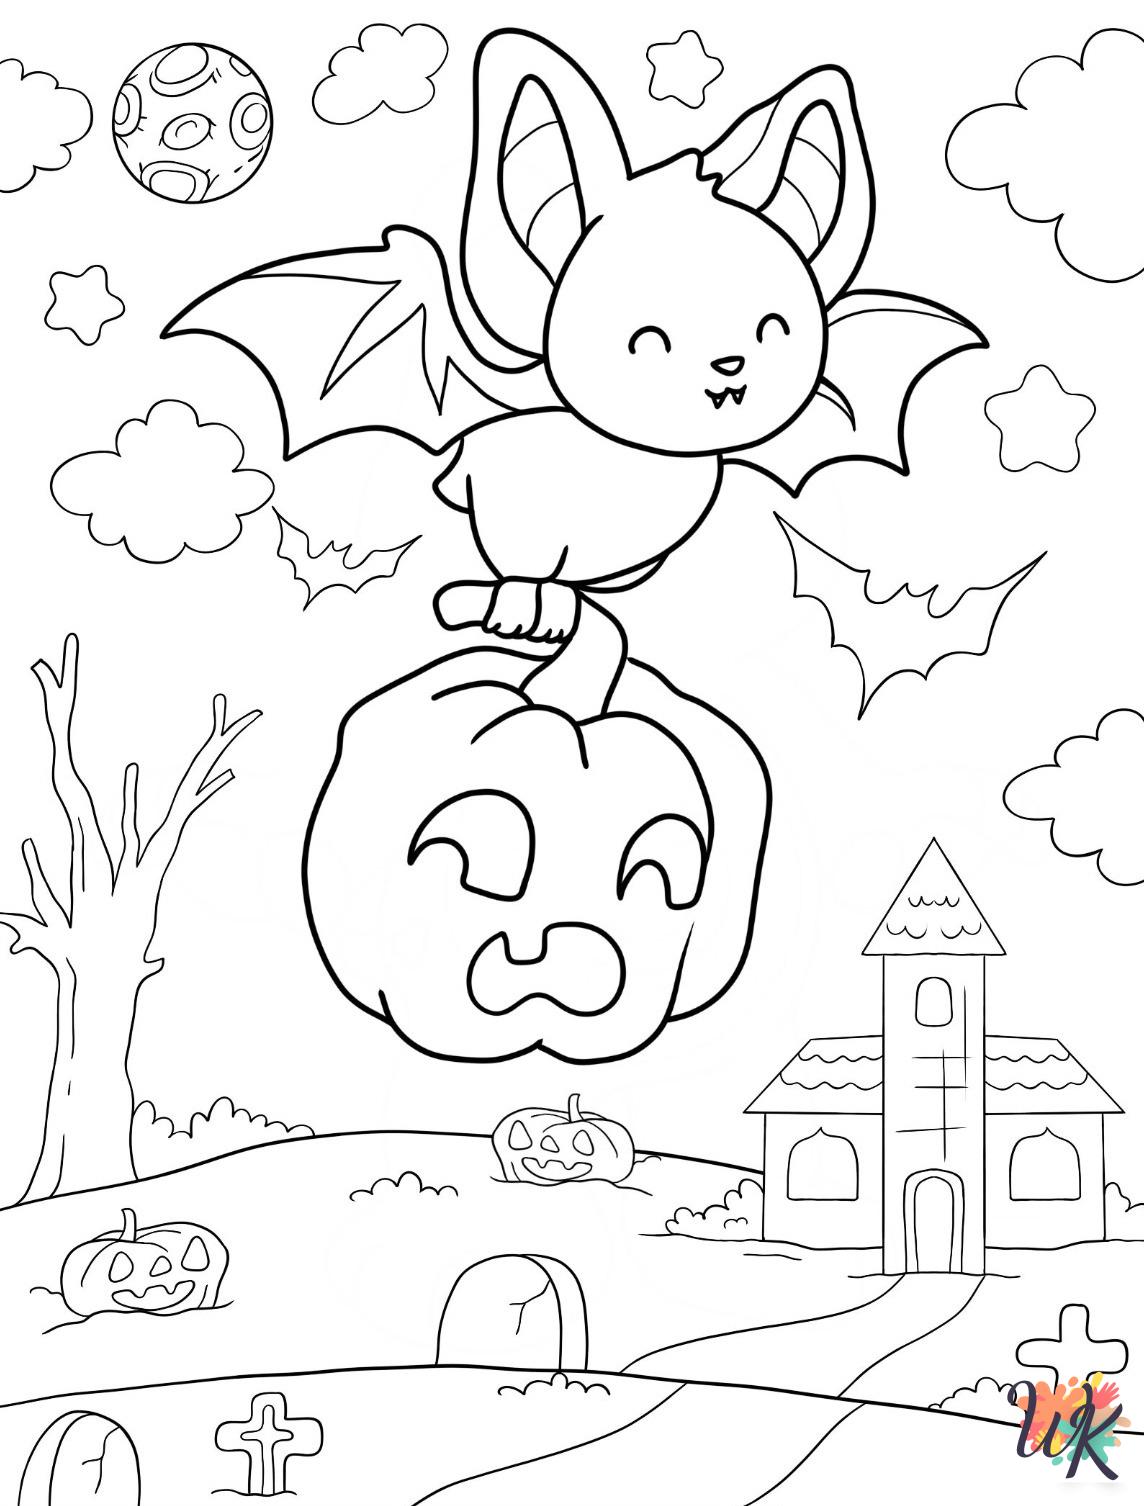 Bat coloring pages pdf